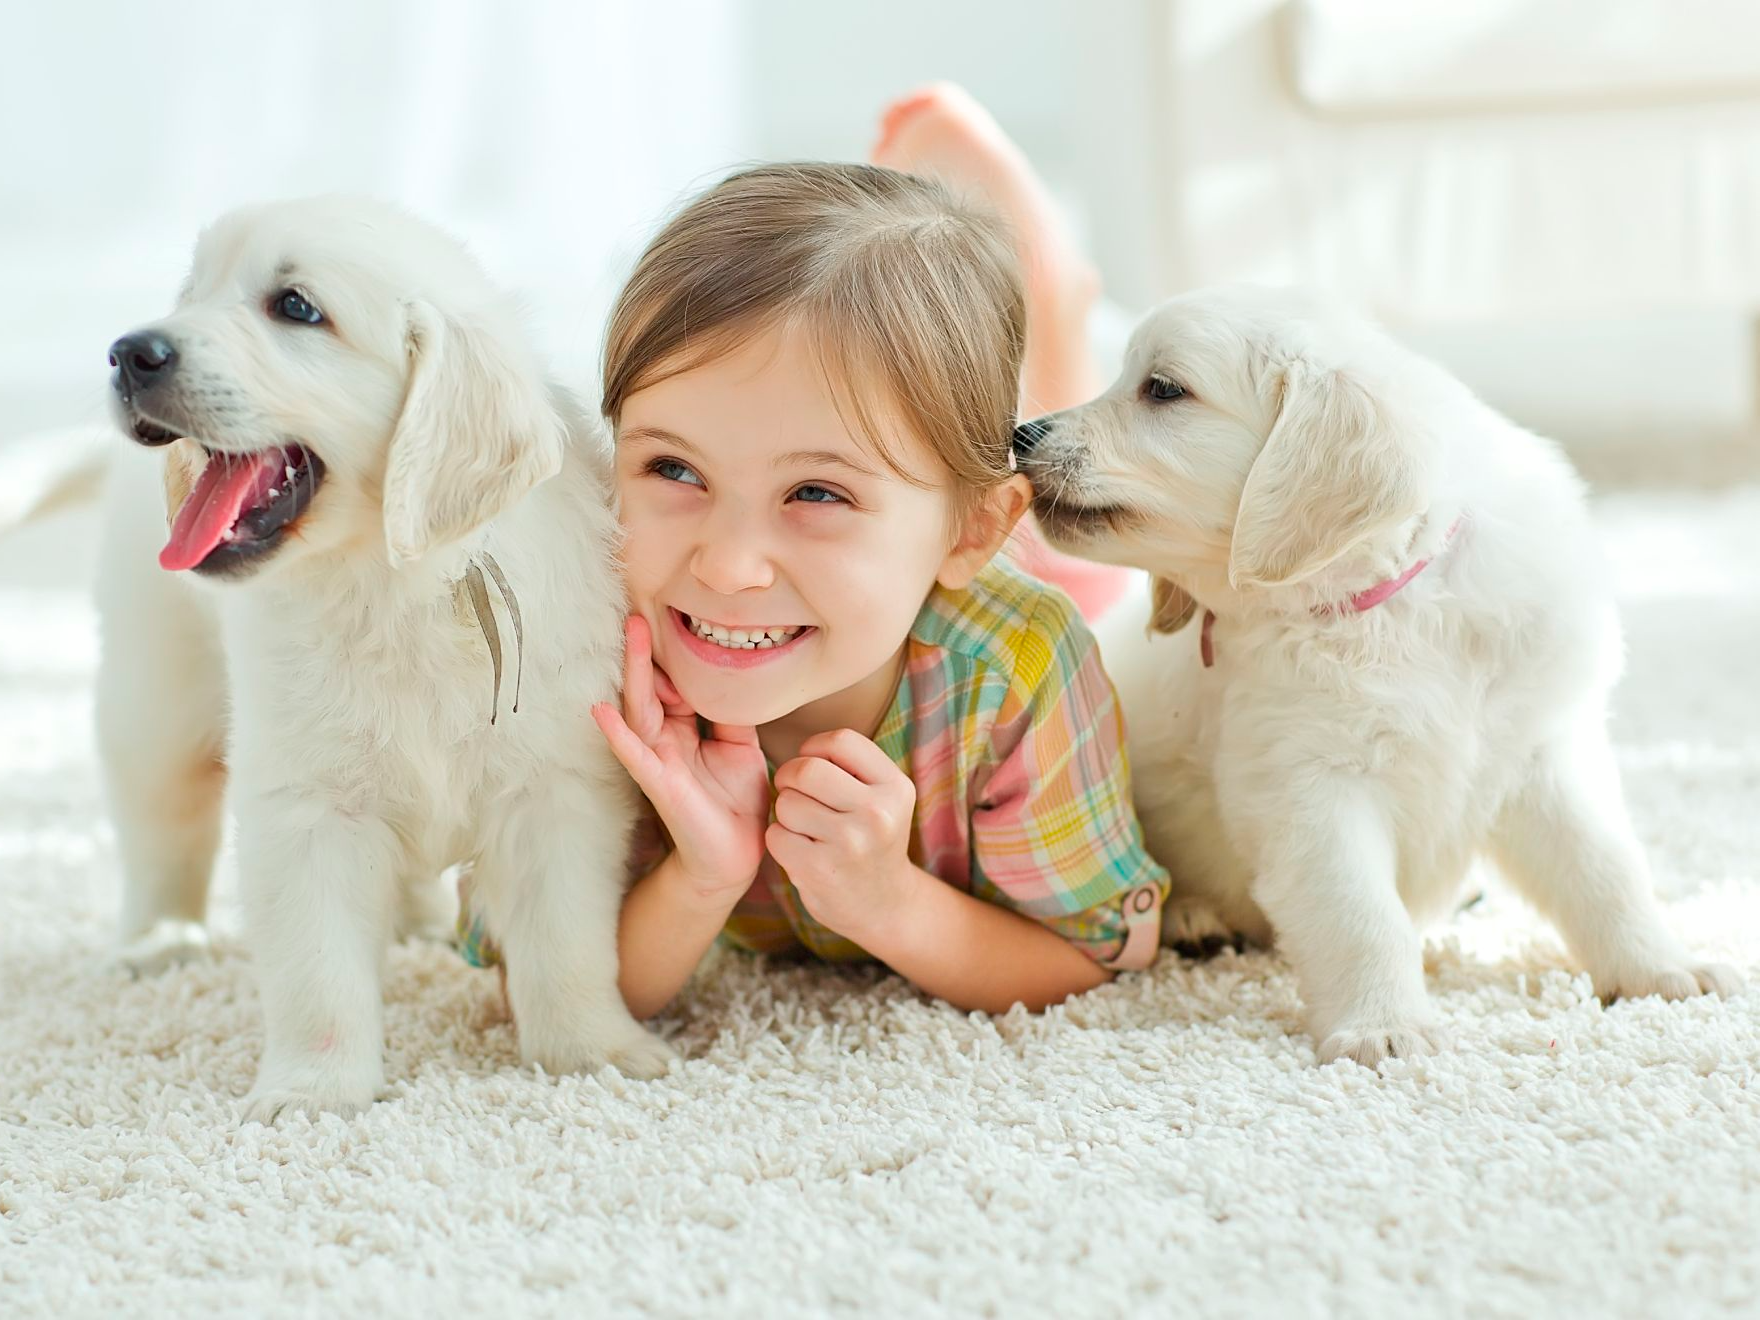 Küçük çocuk, yüzünde bir gülümseme; iki beyaz yavru köpek ile halının üzerinde uzanıyor